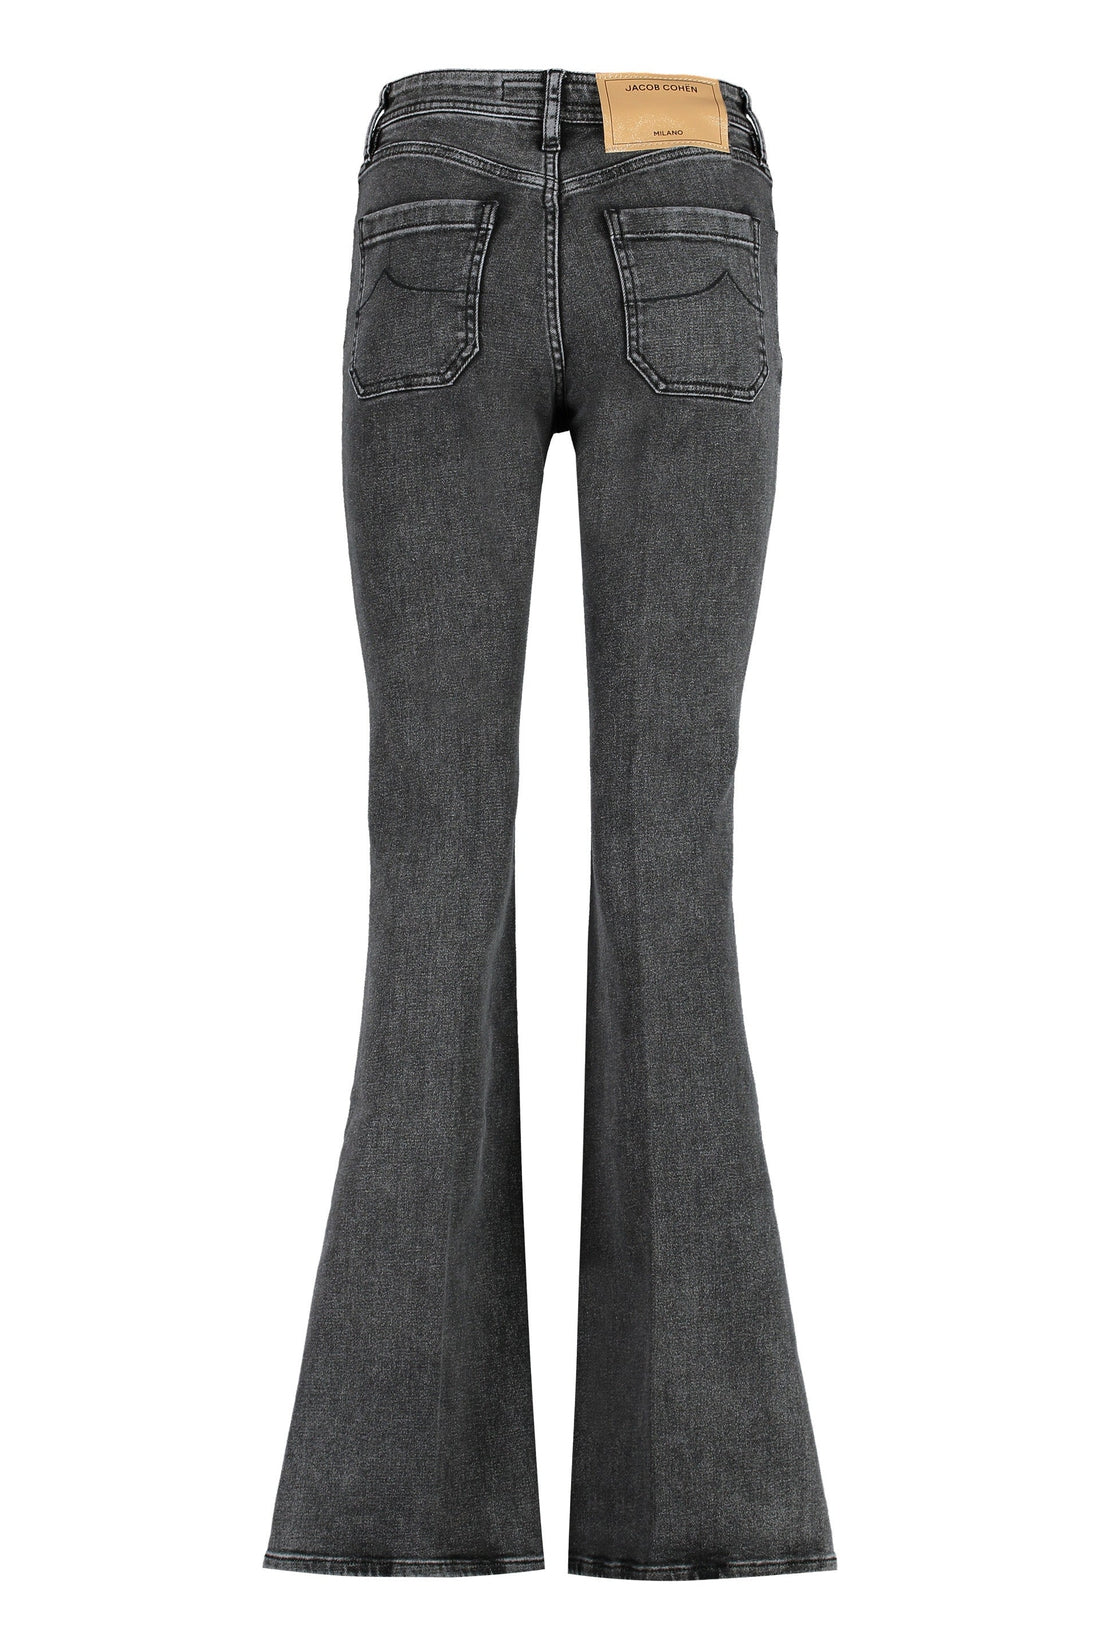 Jacob Cohen-OUTLET-SALE-Erin high-rise slim fit jeans-ARCHIVIST